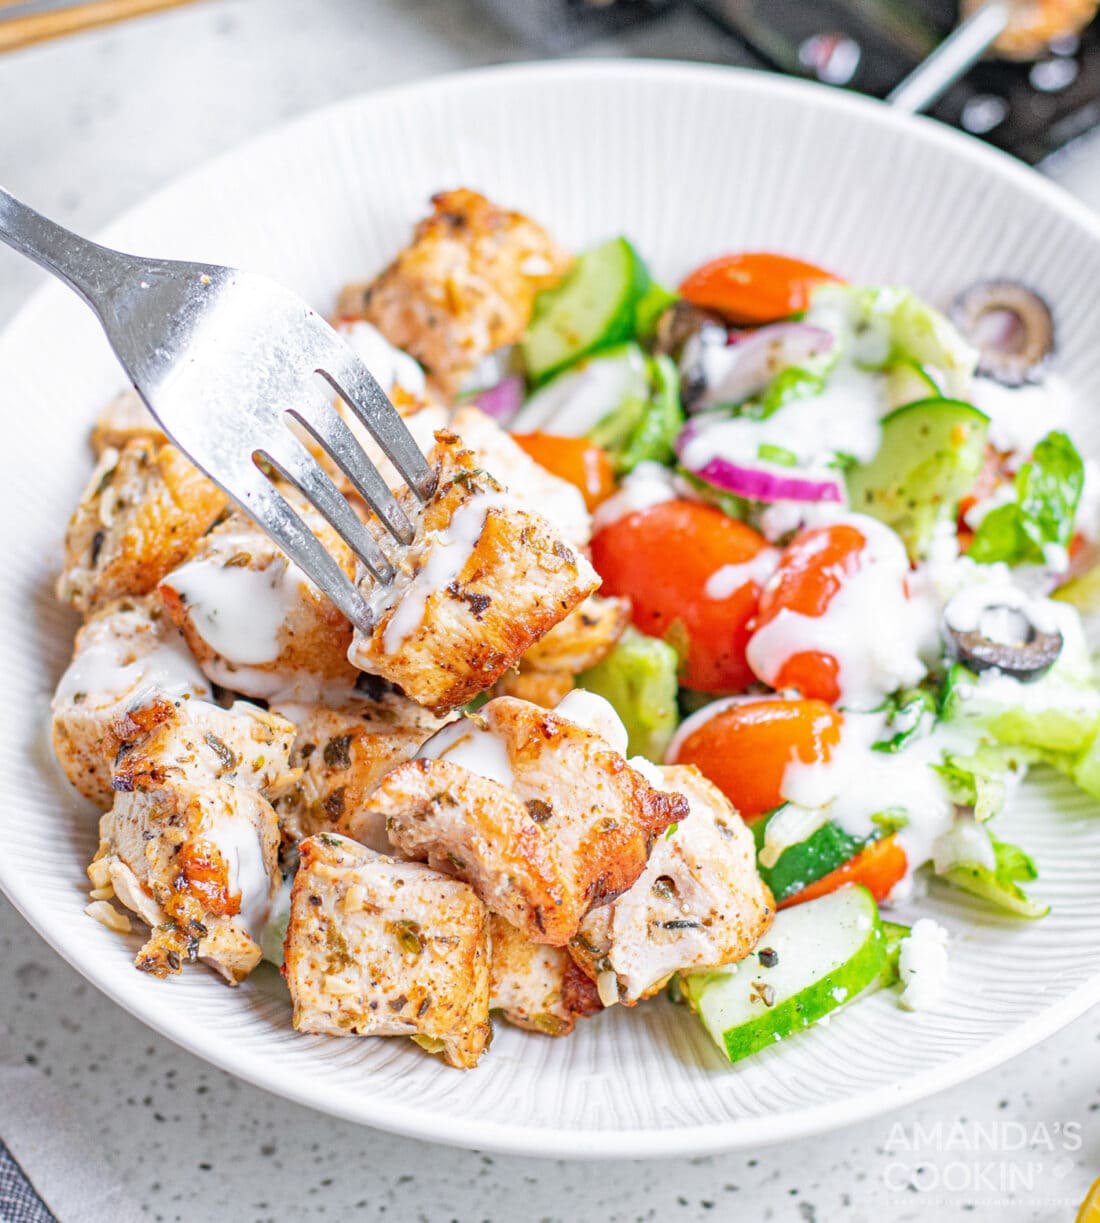 Greek Chicken with salad